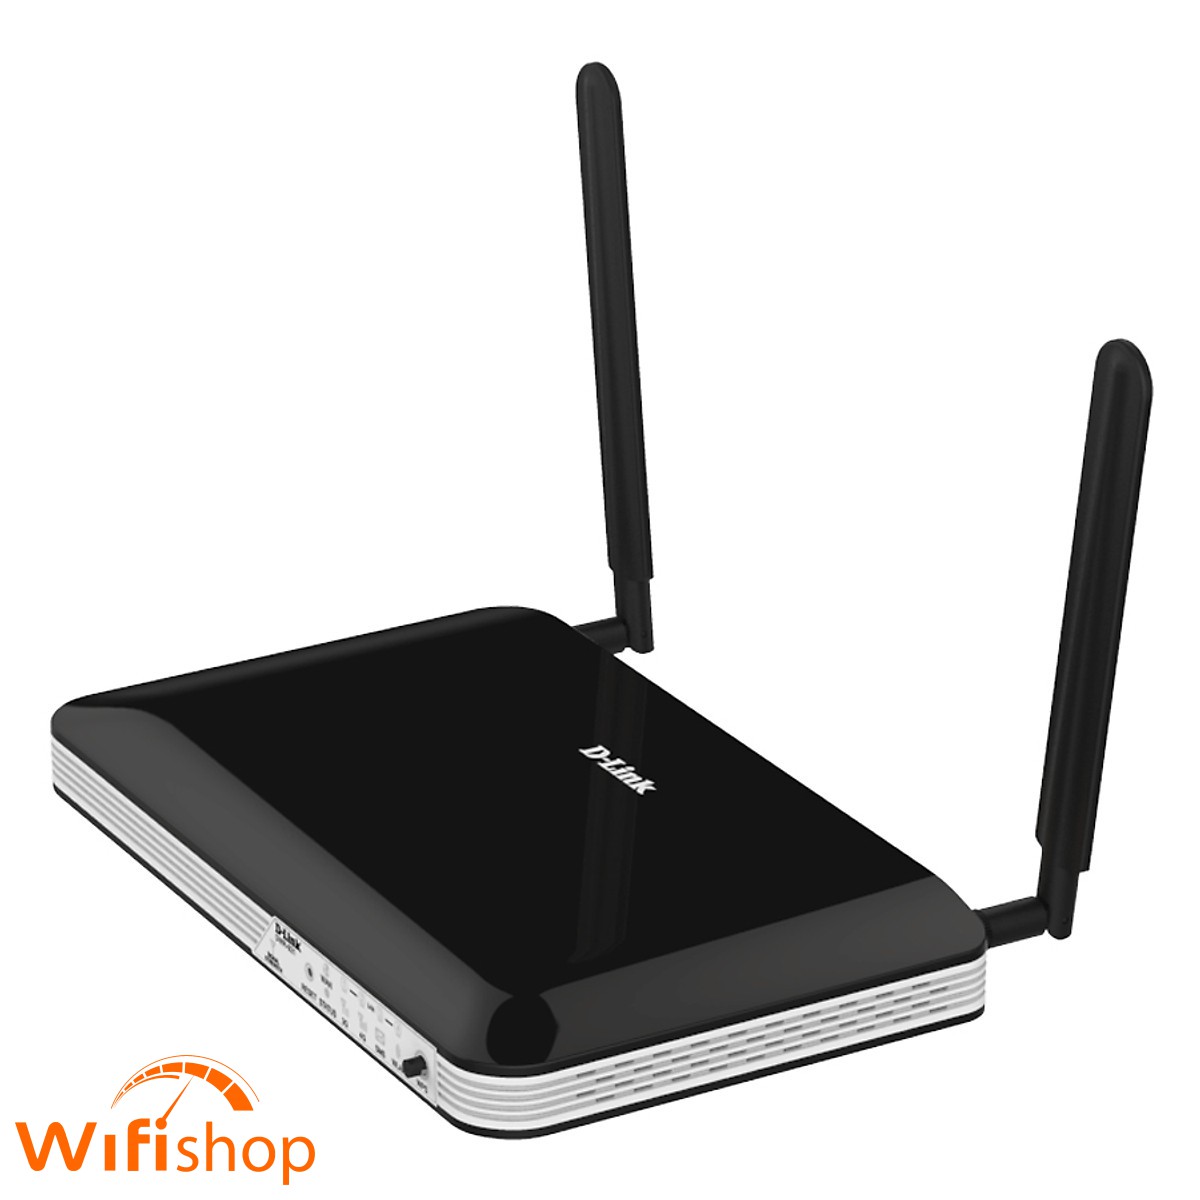 Bộ Phát Wifi 4G Dlink 921 chuẩn N tốc độ lên tới 300Mbps